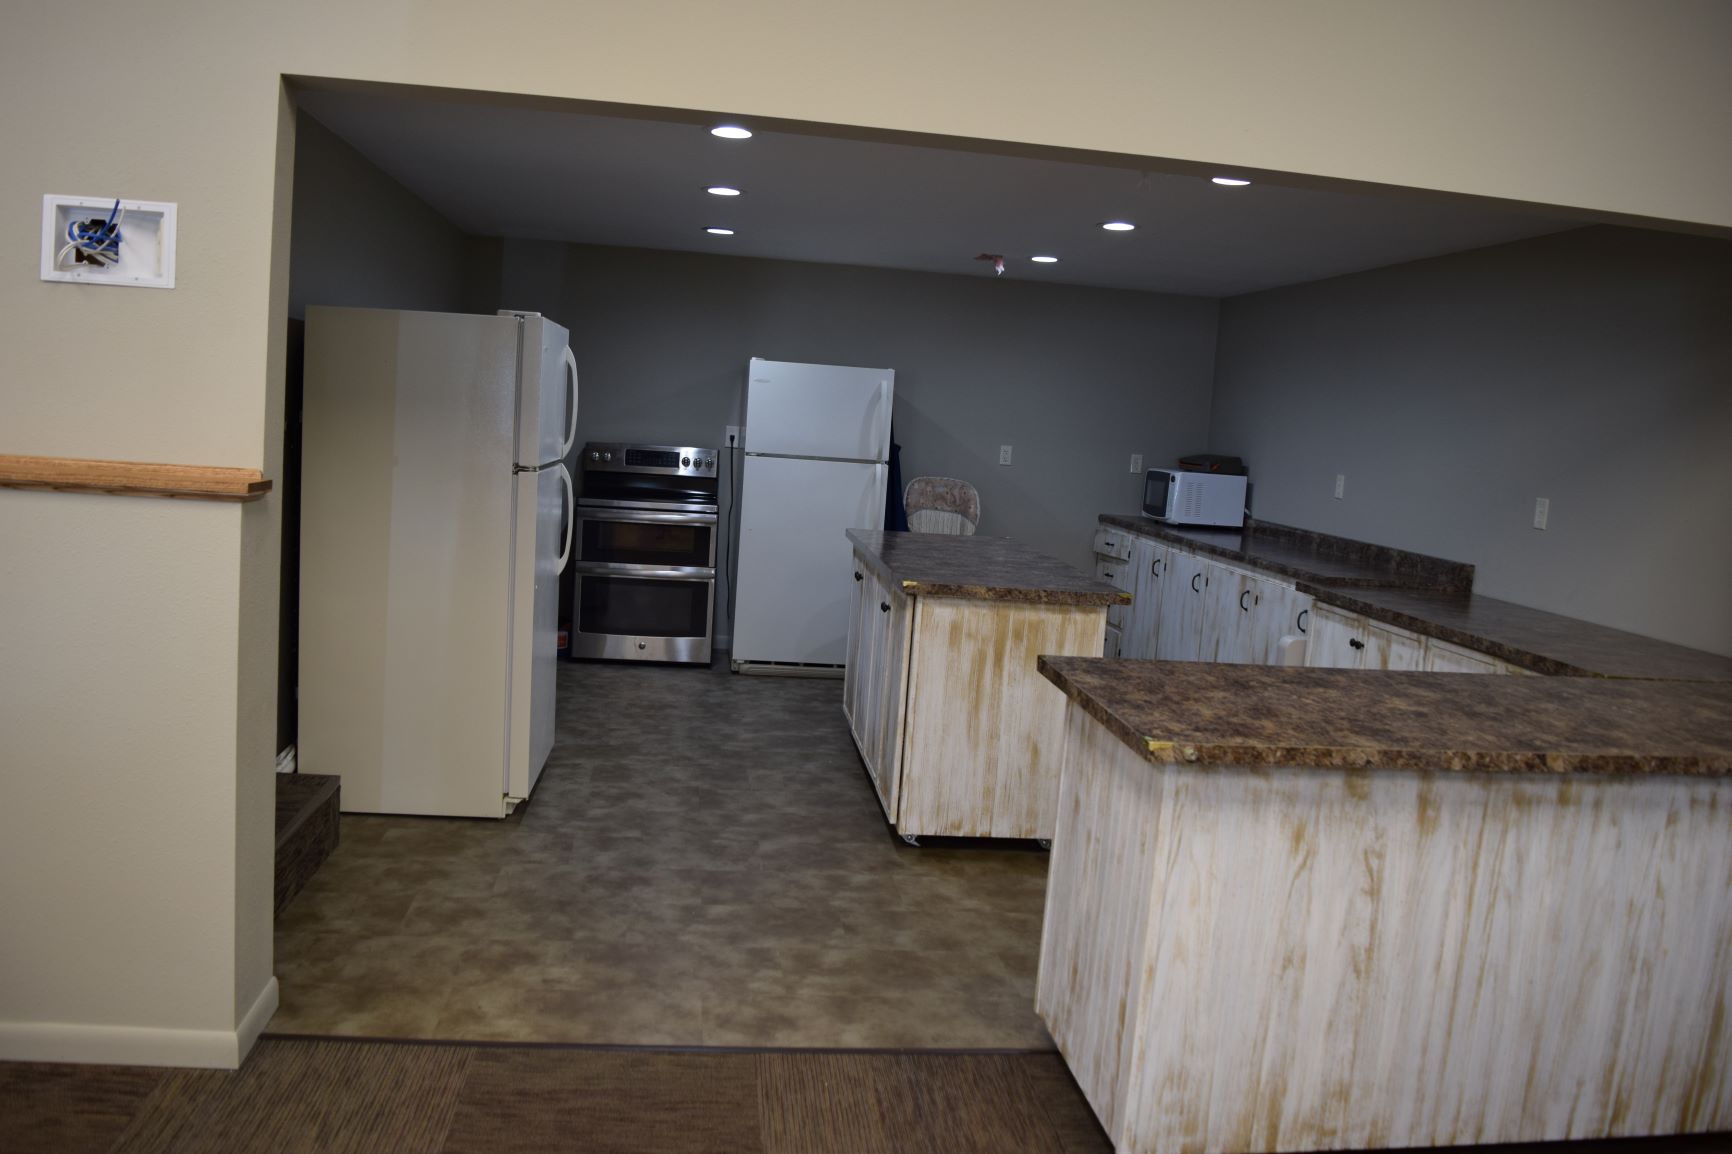 Full-sized kitchen area.